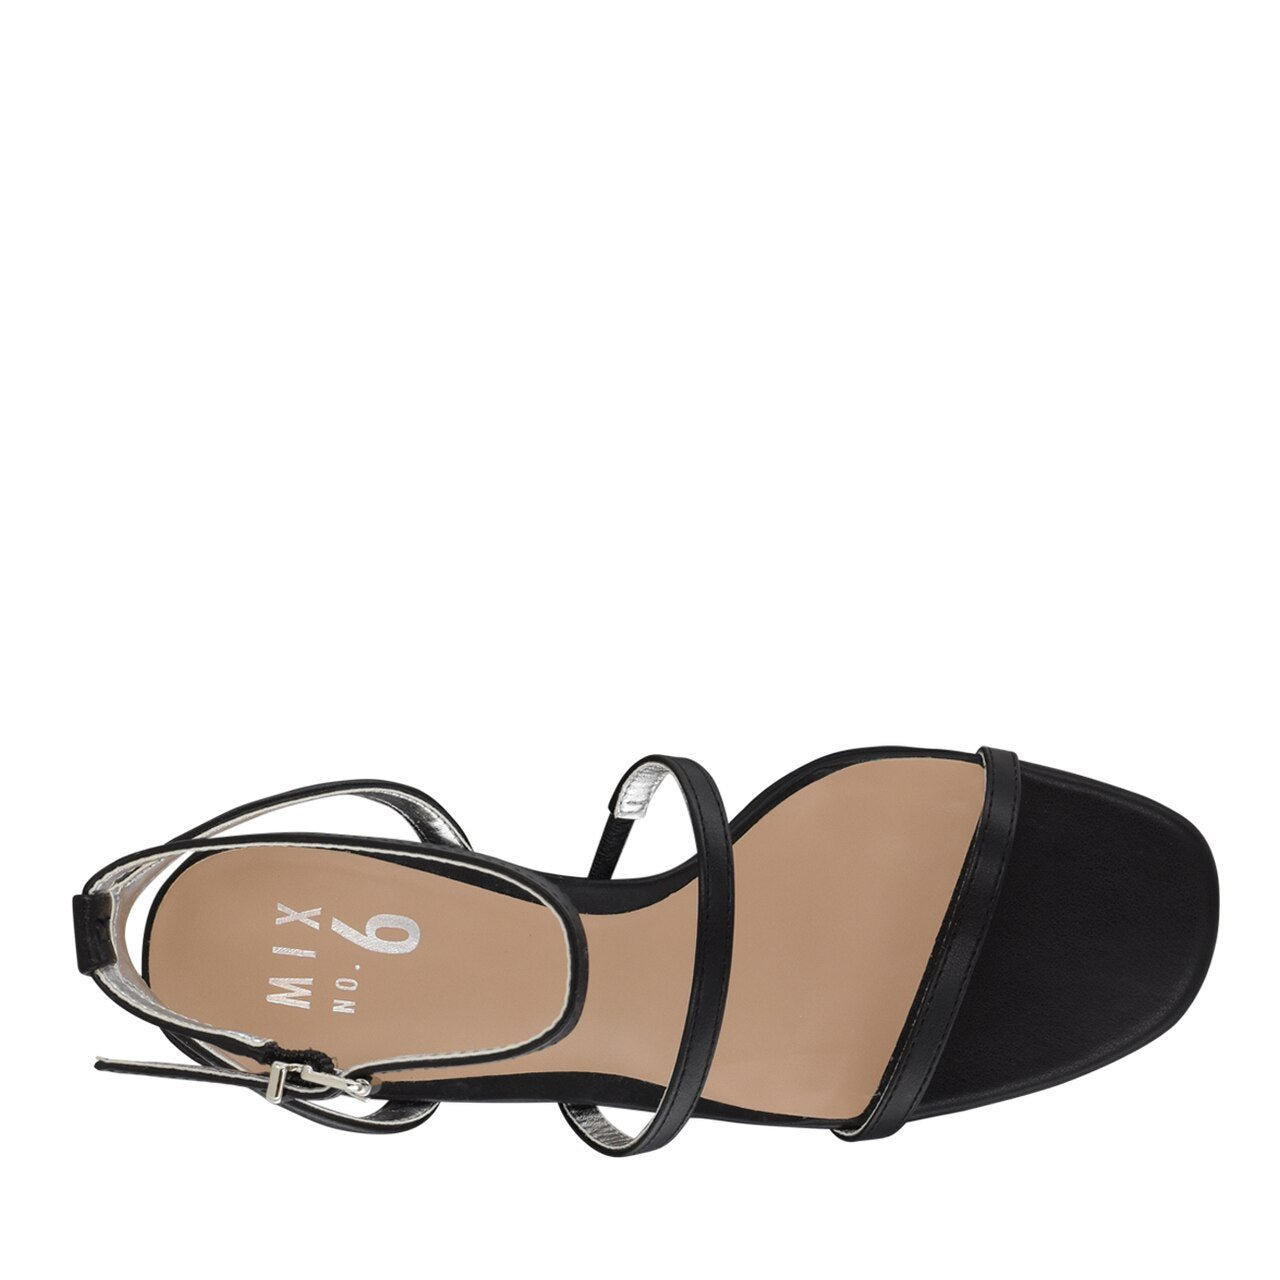 Mix No. Aliciana Heels sandals 6 size 37